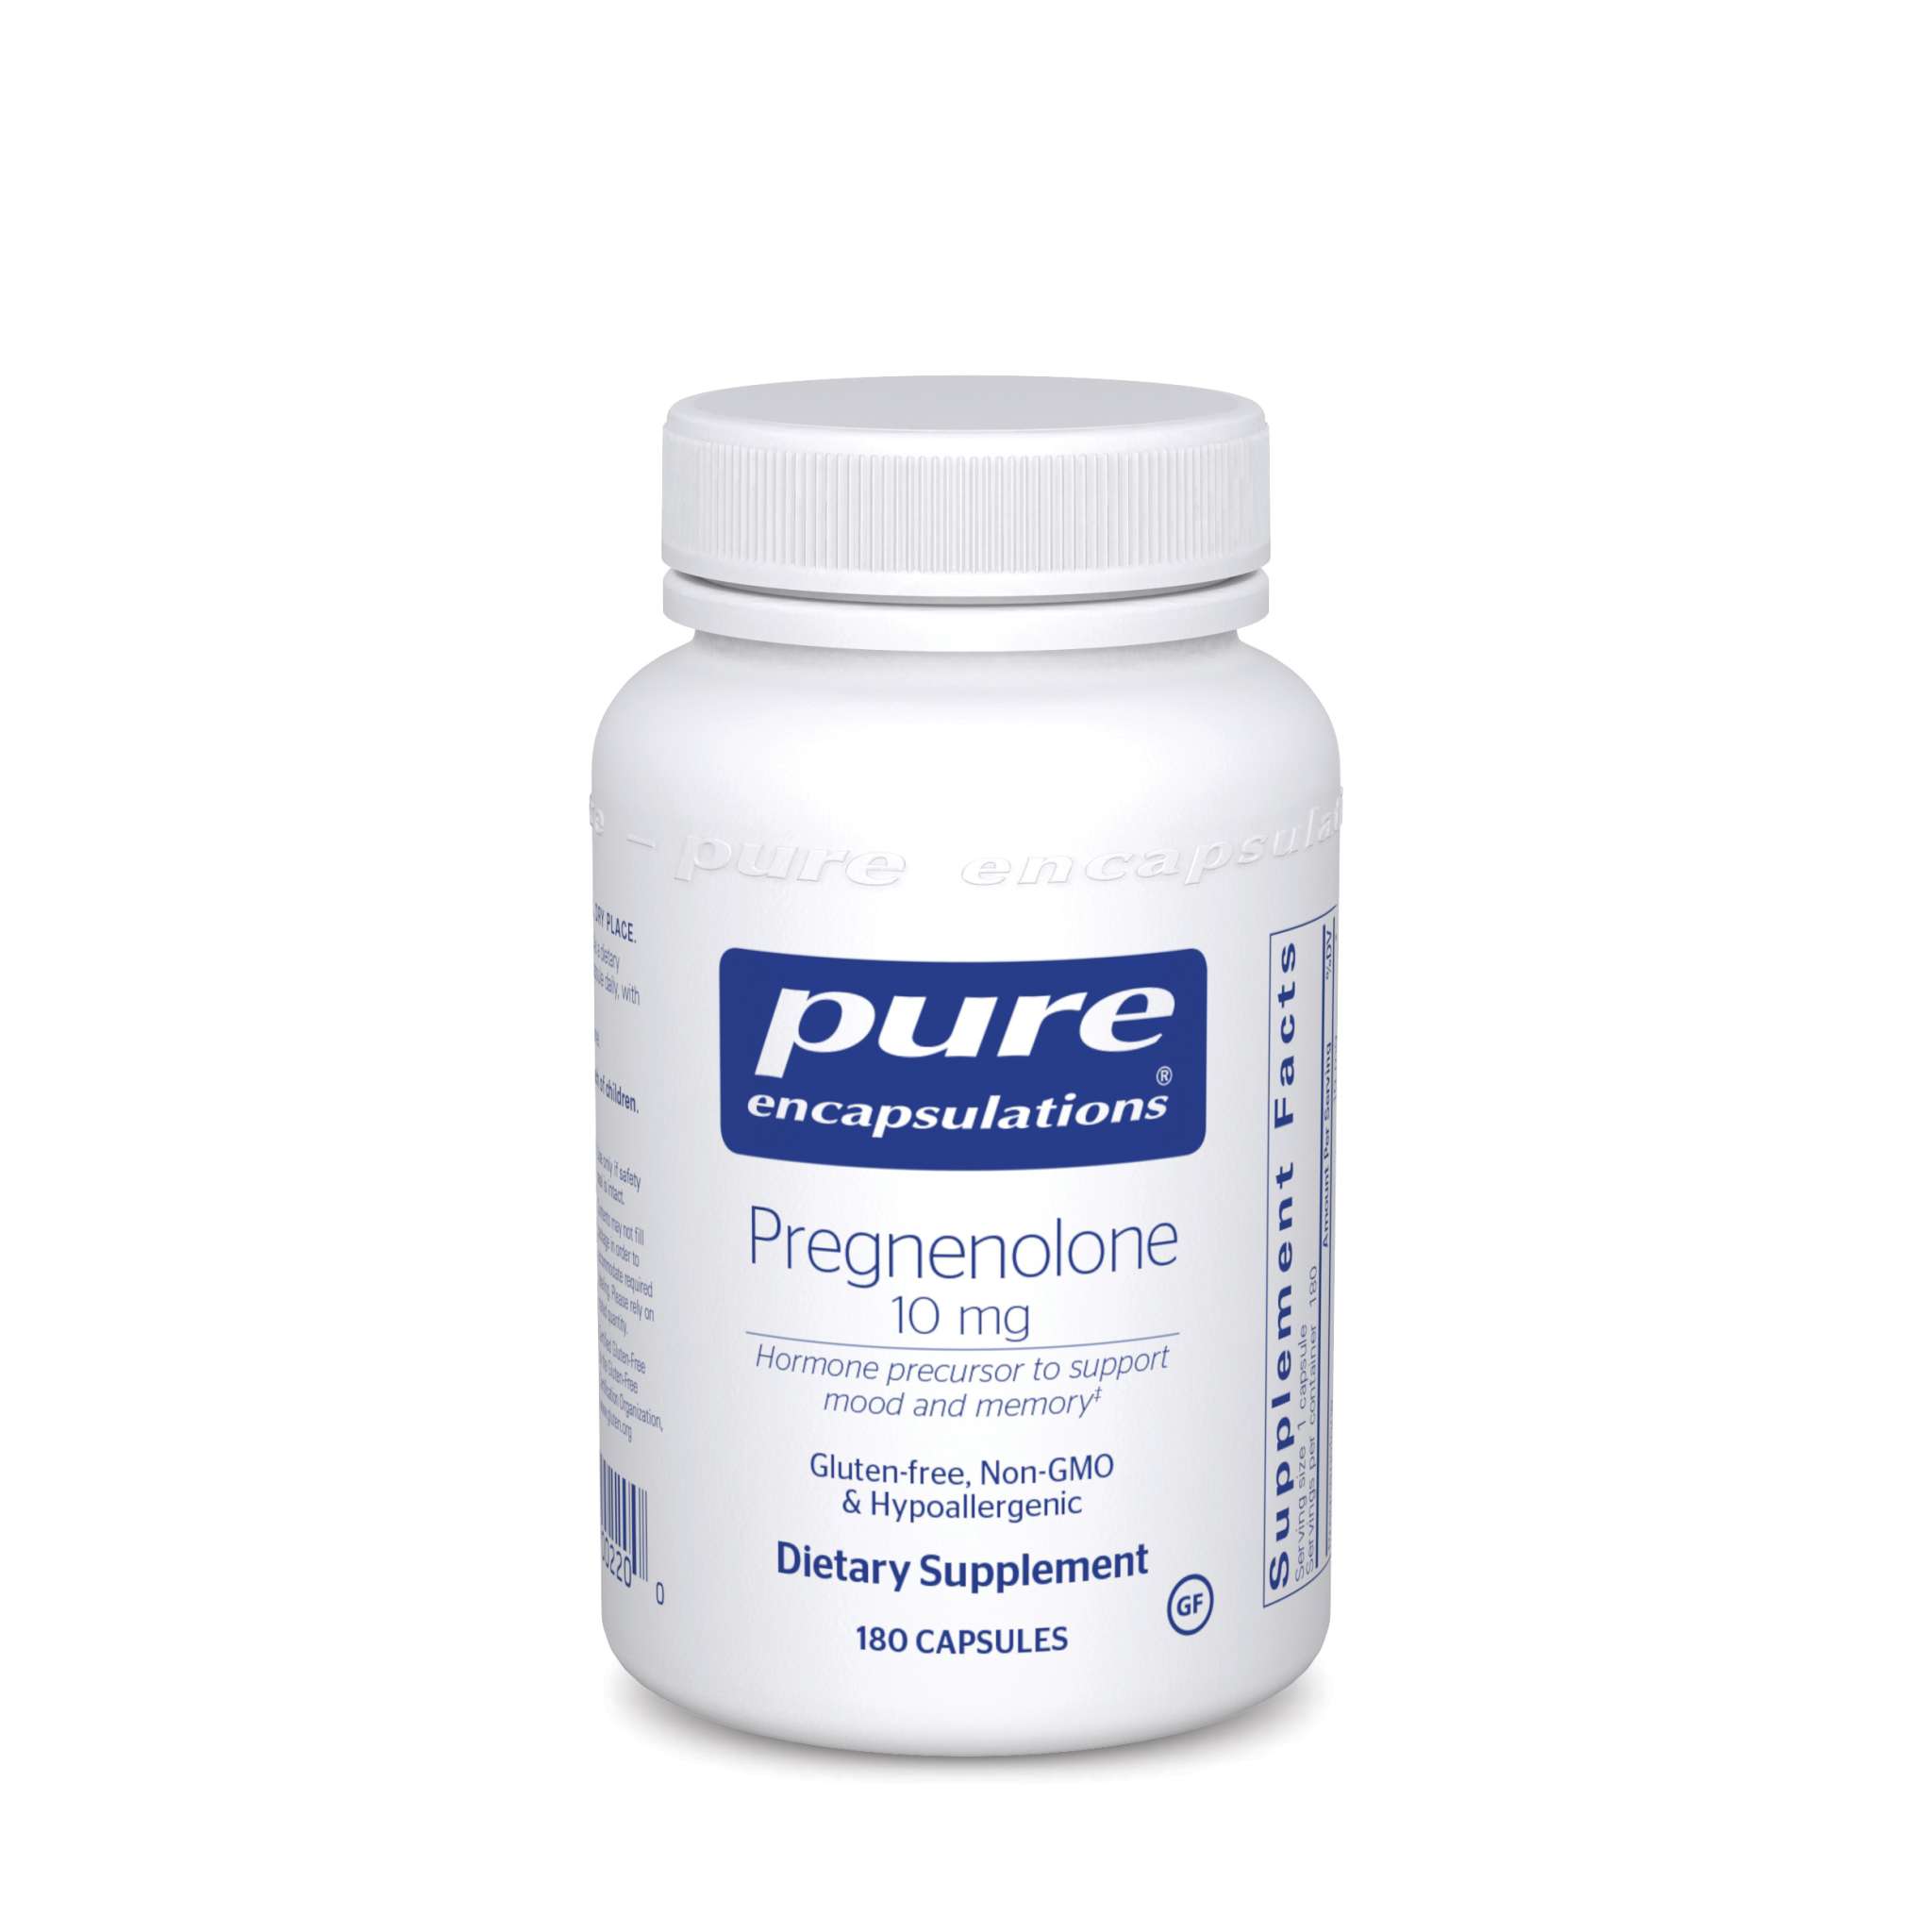 Pure Encapsulations - Pregnenolone 10 mg